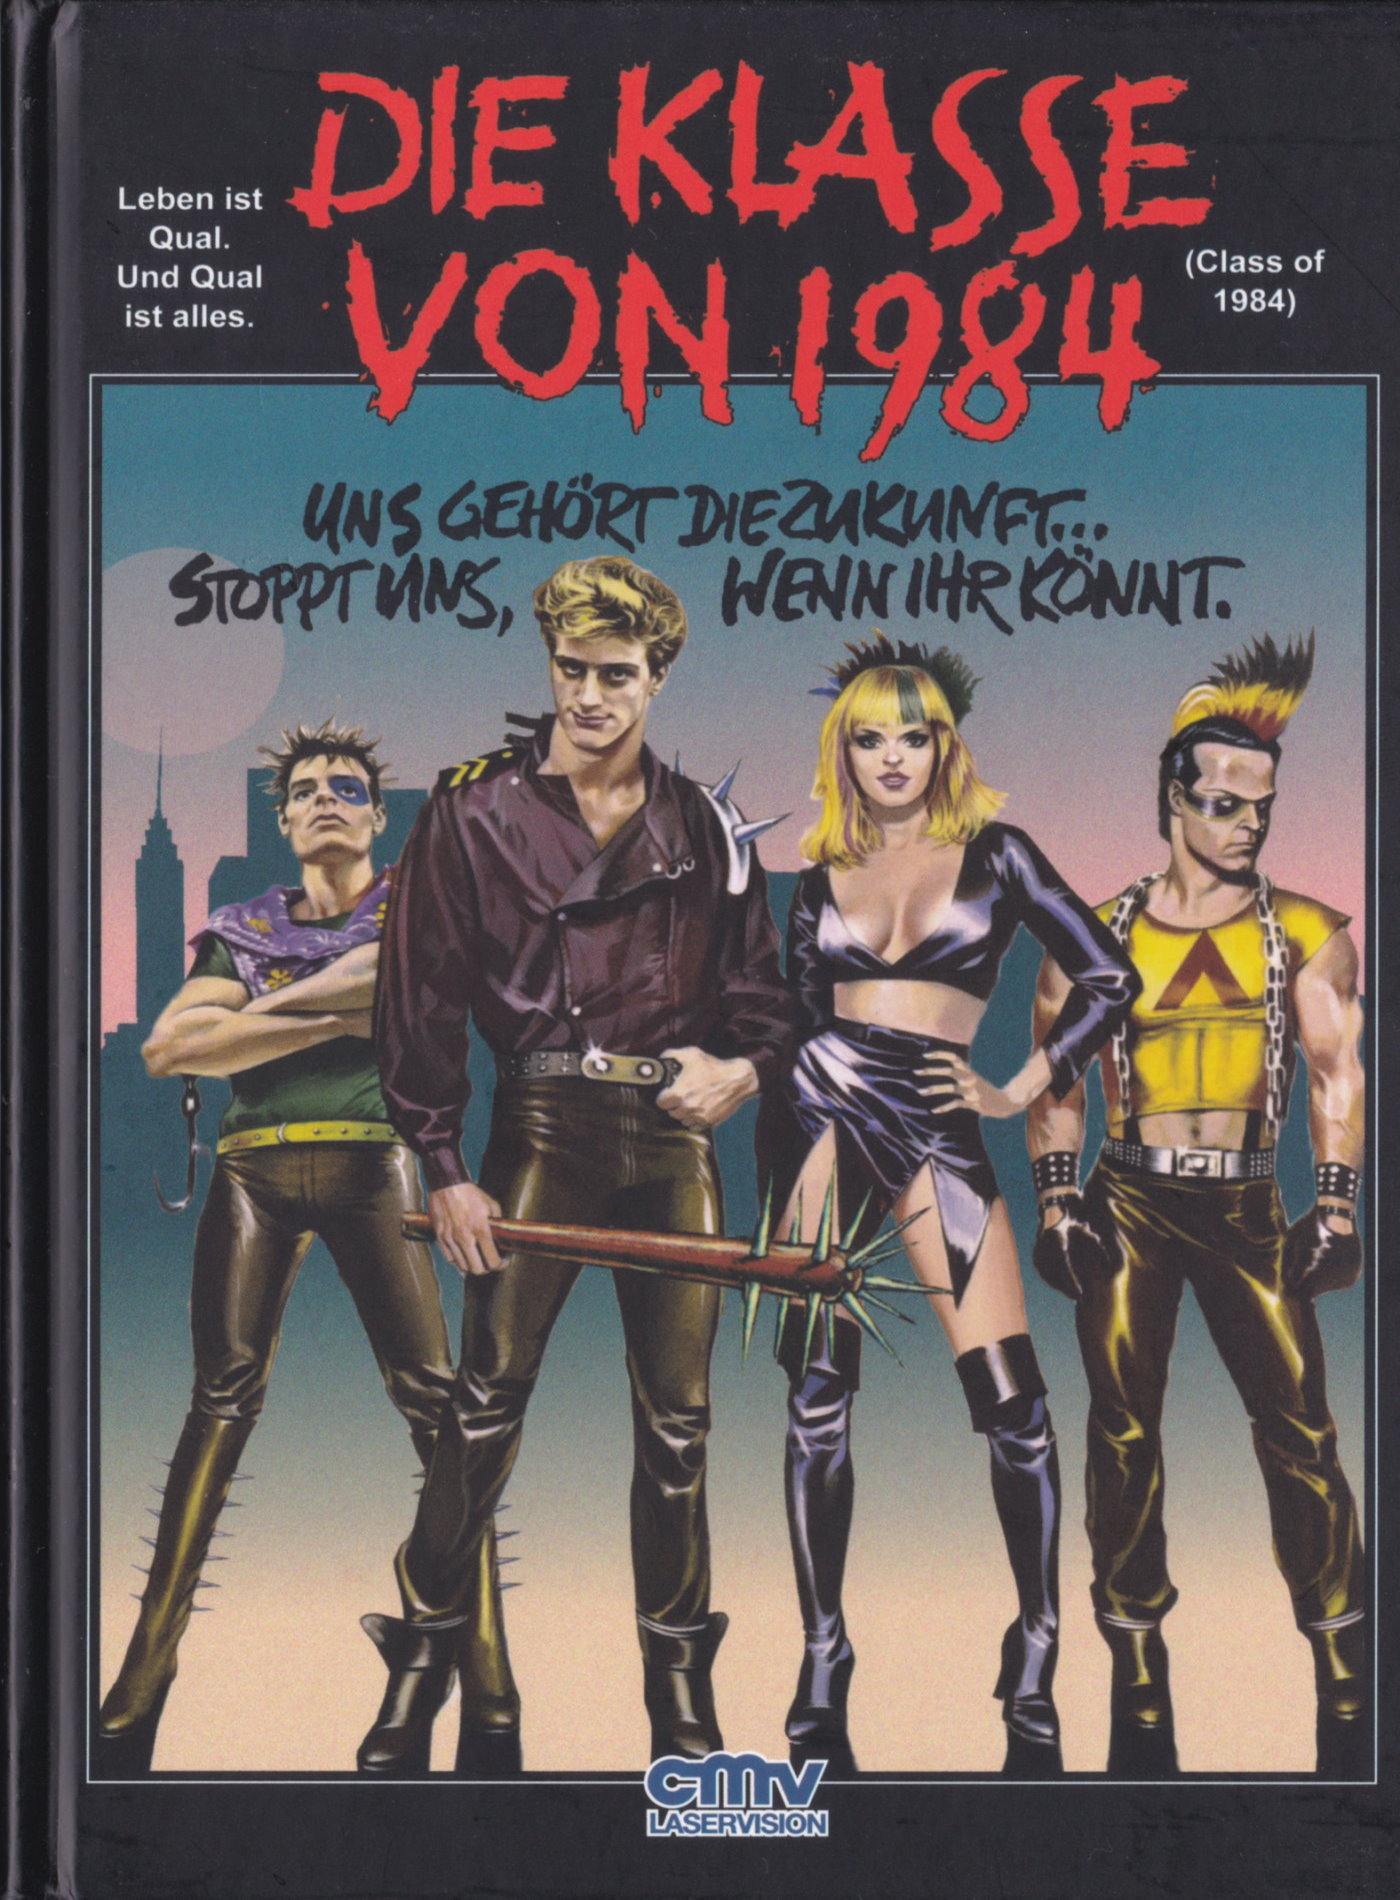 Cover - Die Klasse von 1984.jpg